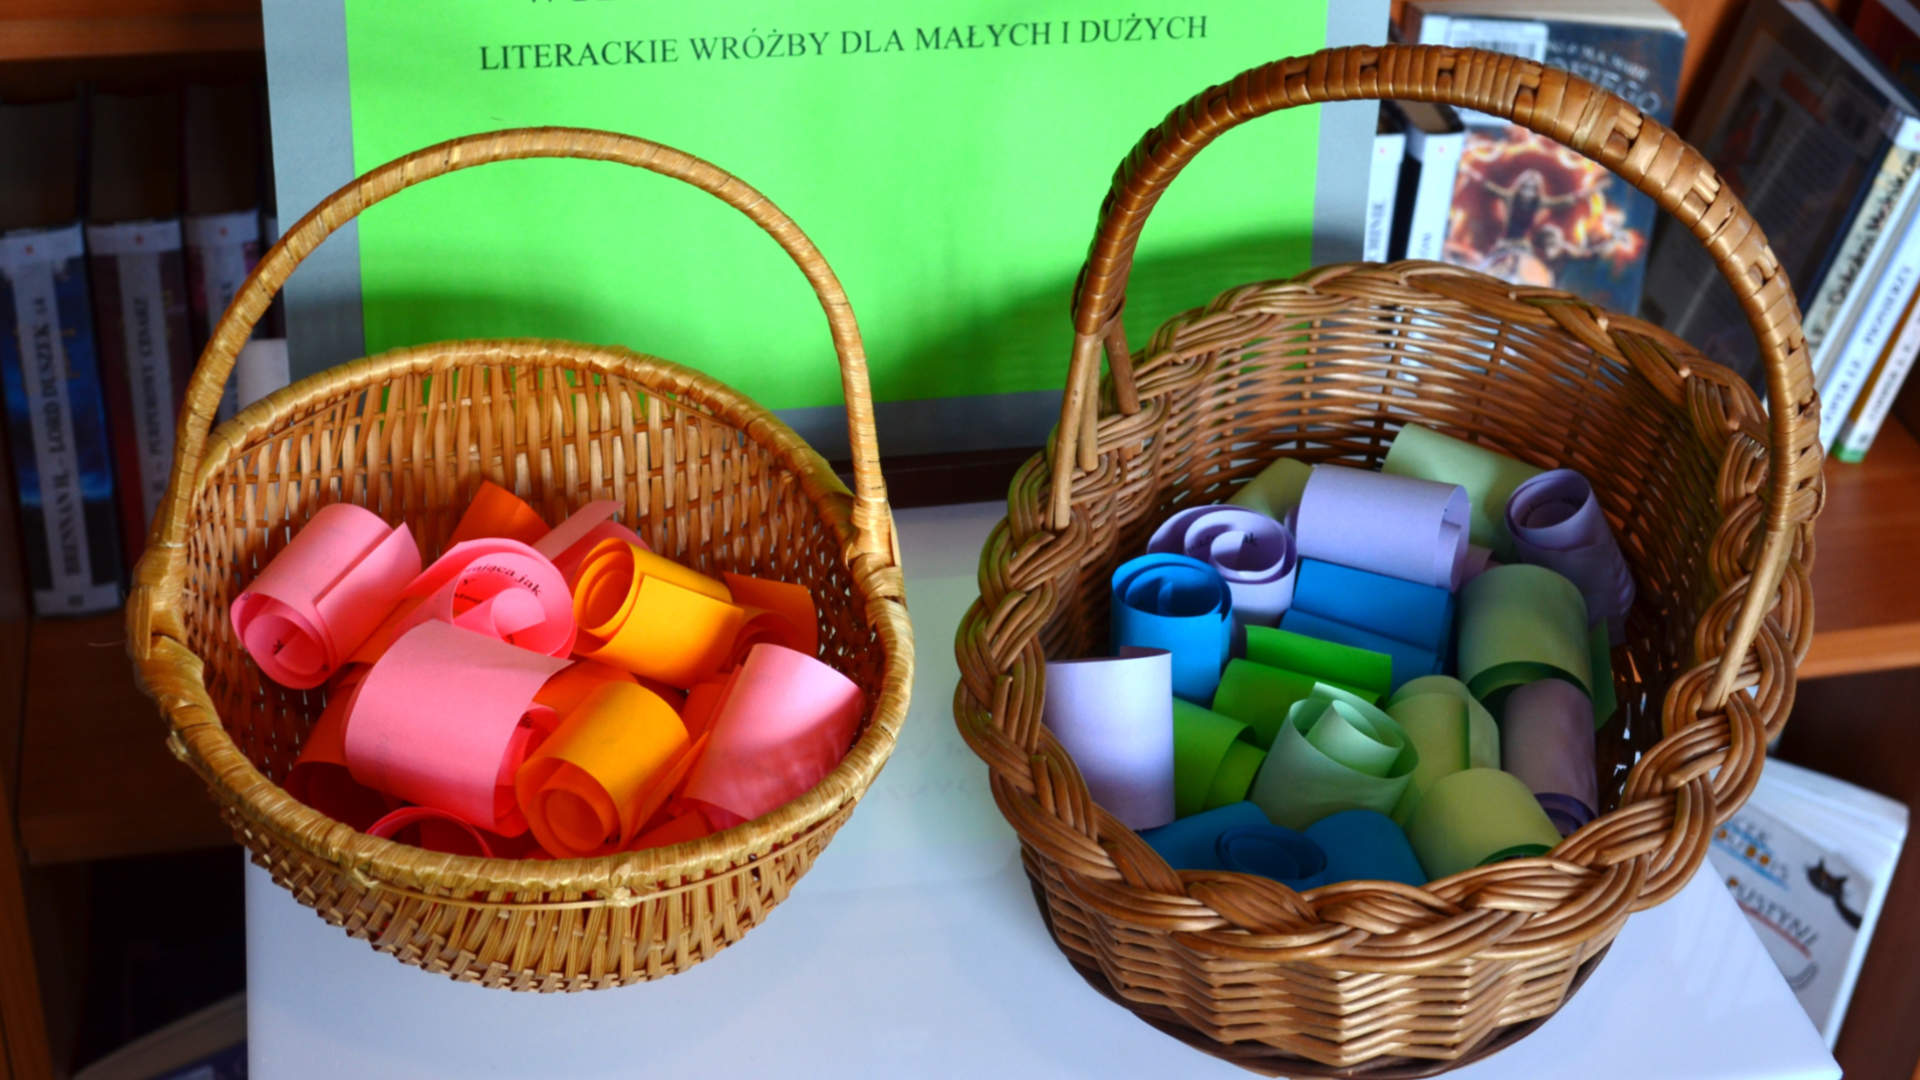 Zdjęcie koszyków z kolorowymi rulonikami papieru, na którym zapisane są literackie wróżby.